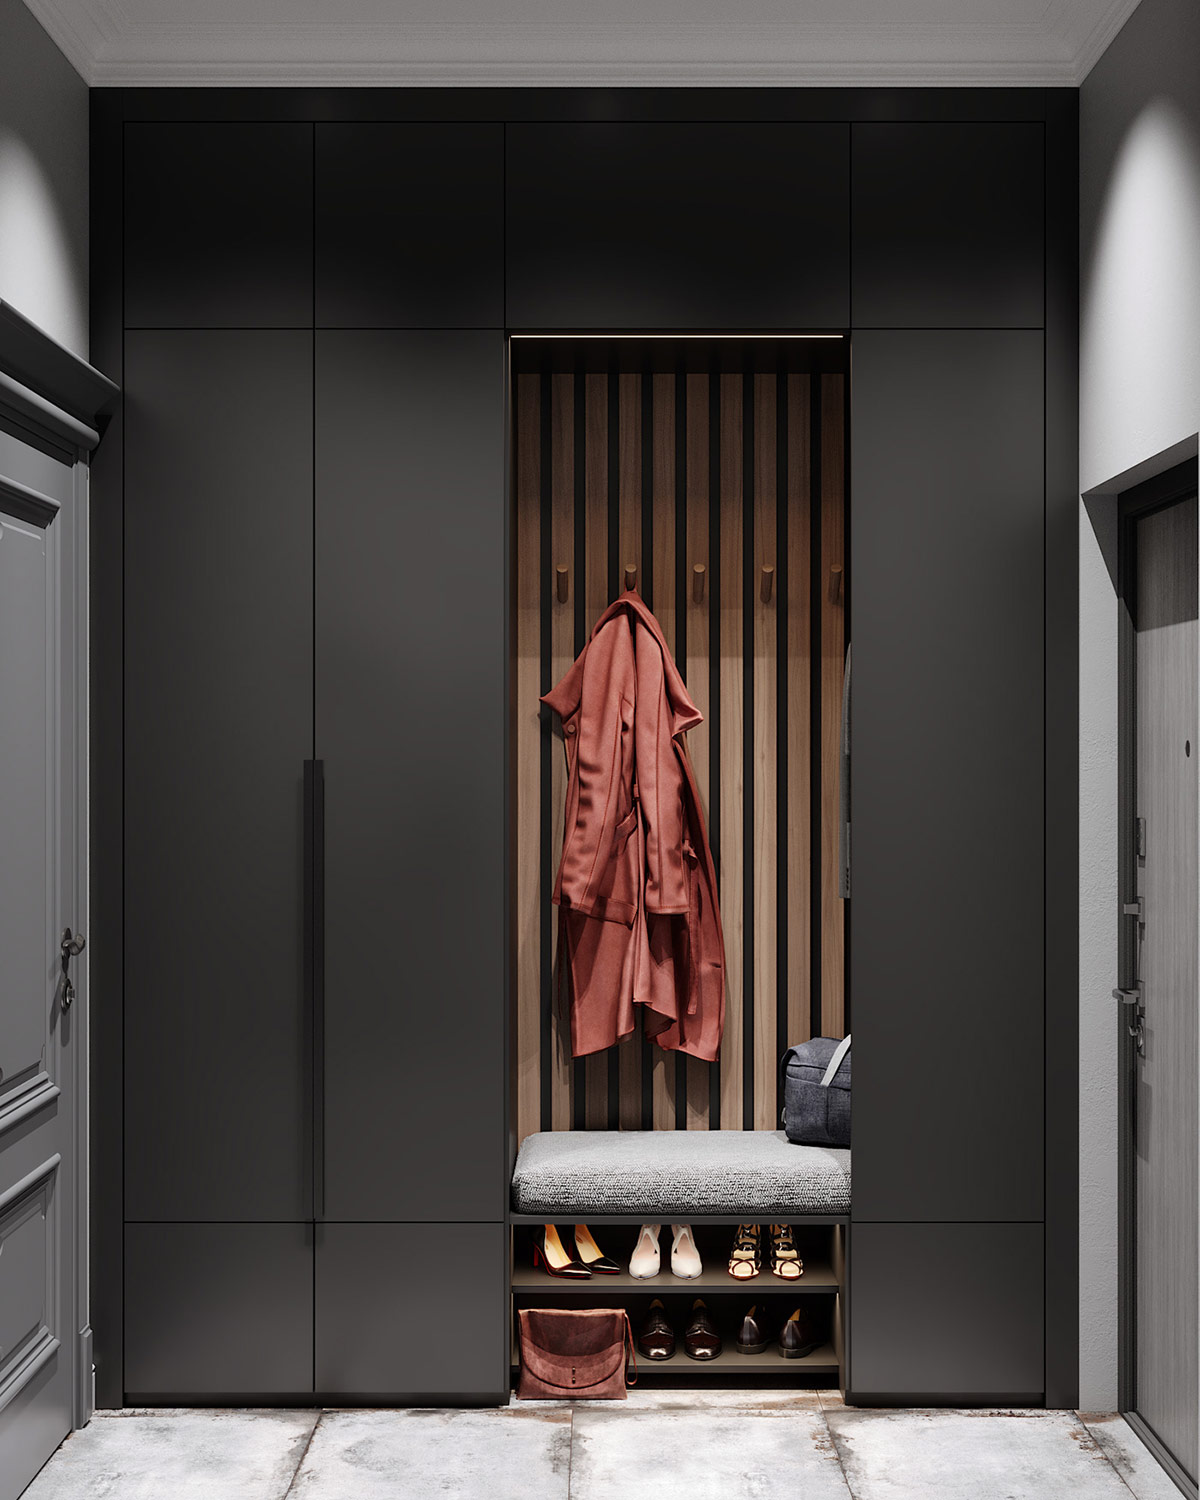 34shoe-storage利基市场内的木板装饰特色与黑色壁橱门形成强烈对比。鞋架可以巧妙地利用板凳下方的空间.jpg